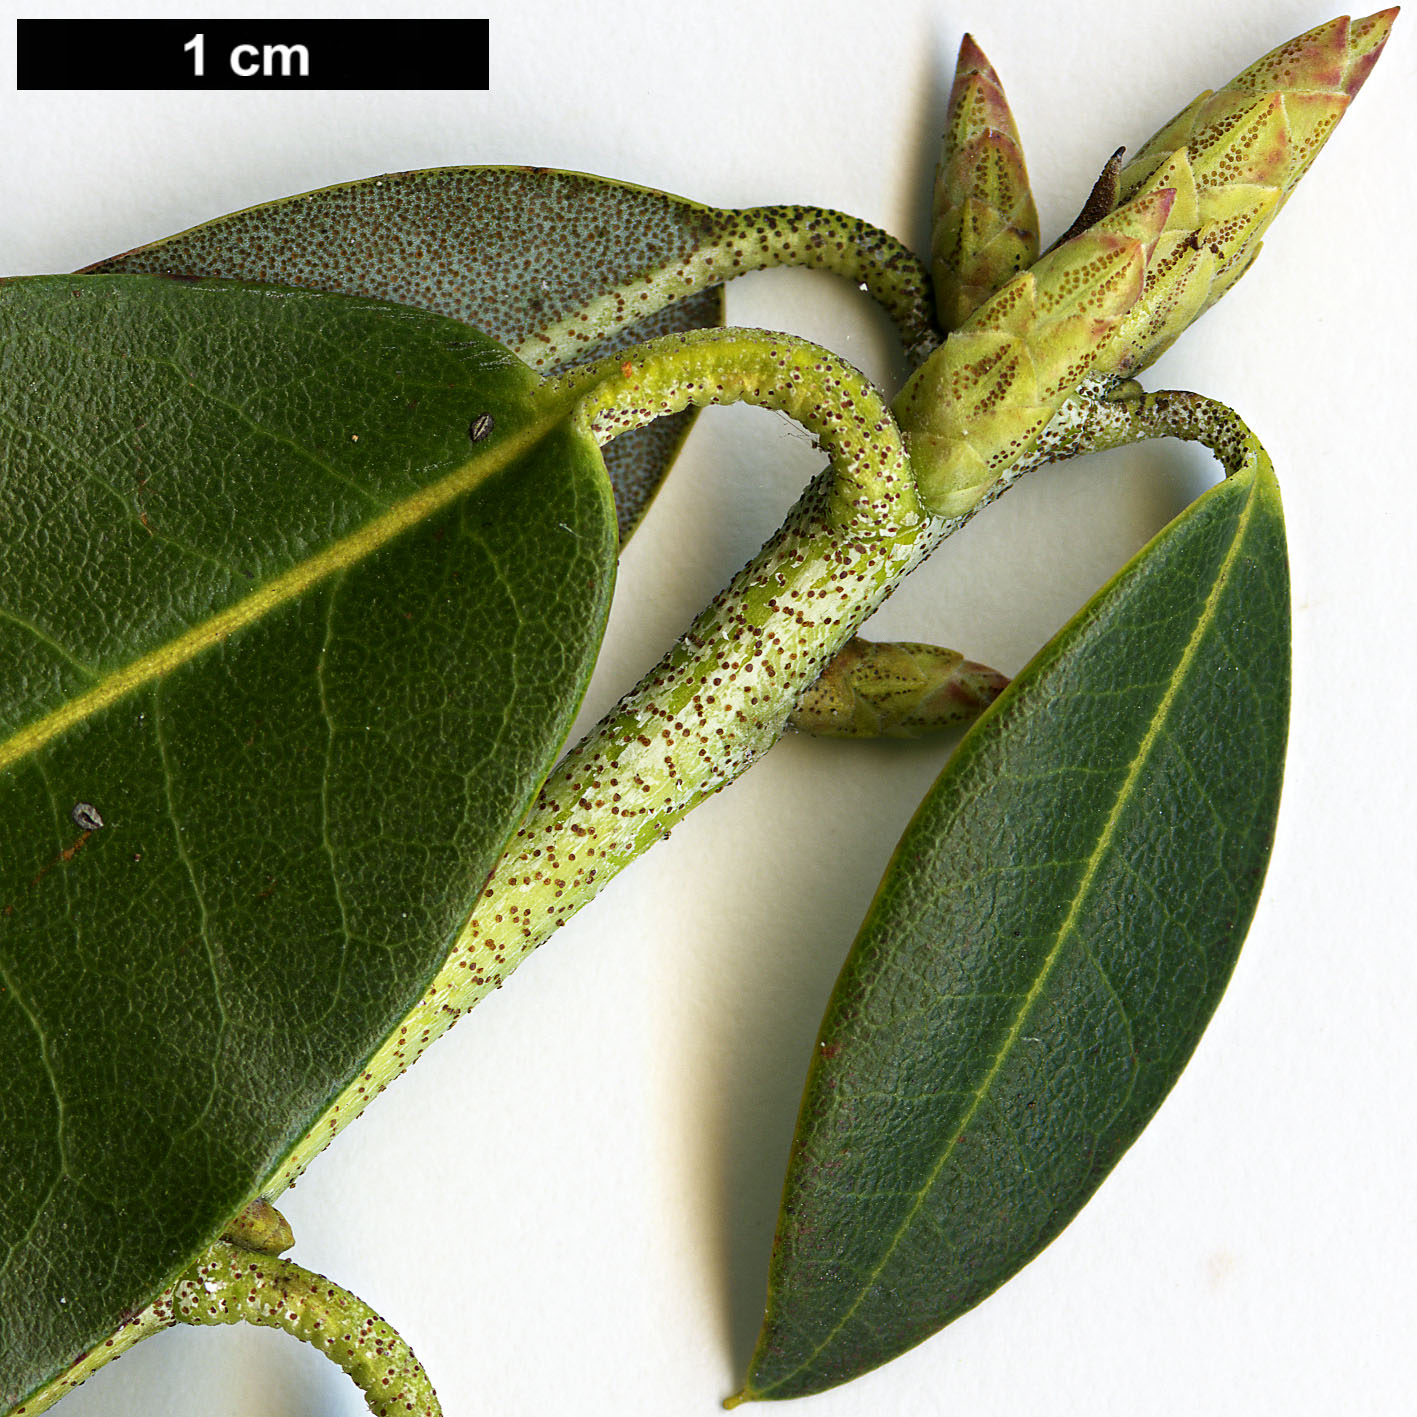 High resolution image: Family: Ericaceae - Genus: Rhododendron - Taxon: triflorum - SpeciesSub: var. bauhiniiflorum